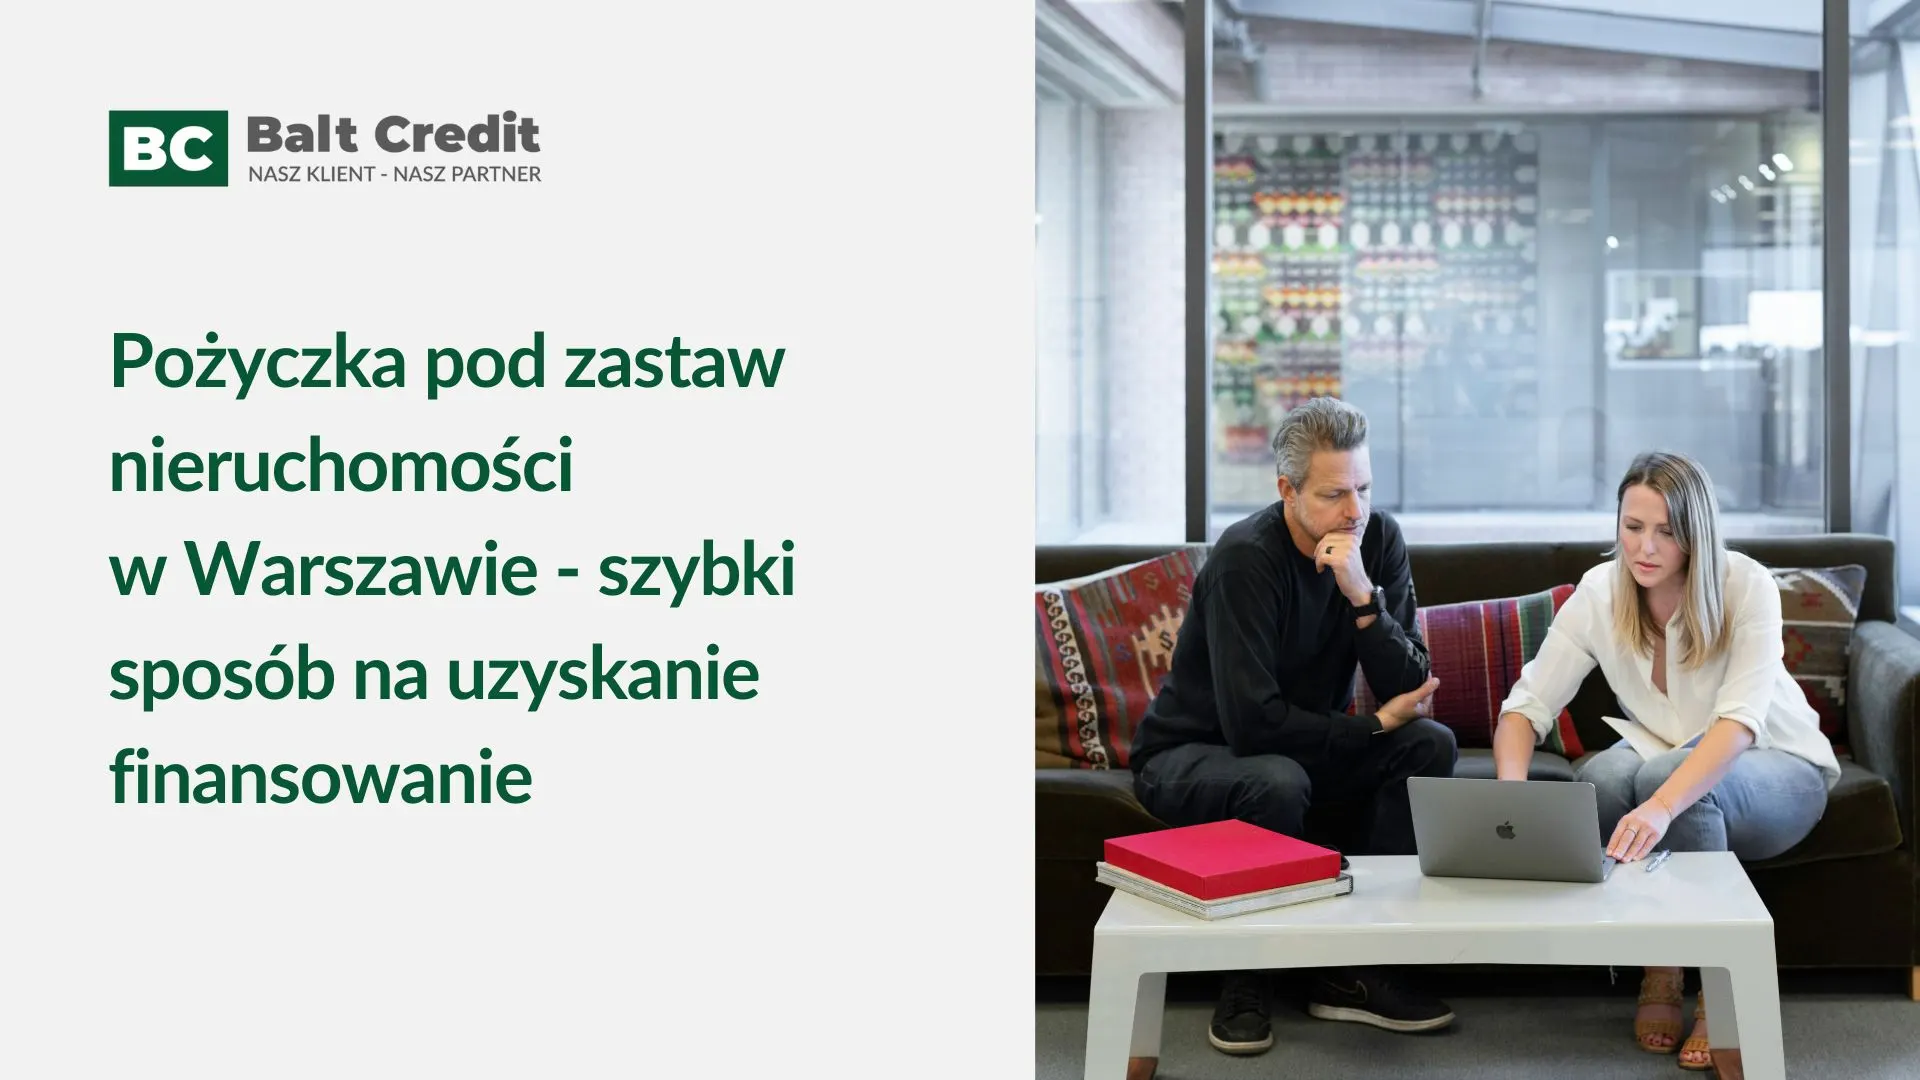 Pożyczka pod zastaw nieruchomości Warszawa - szybki sposób na uzyskanie finansowania 